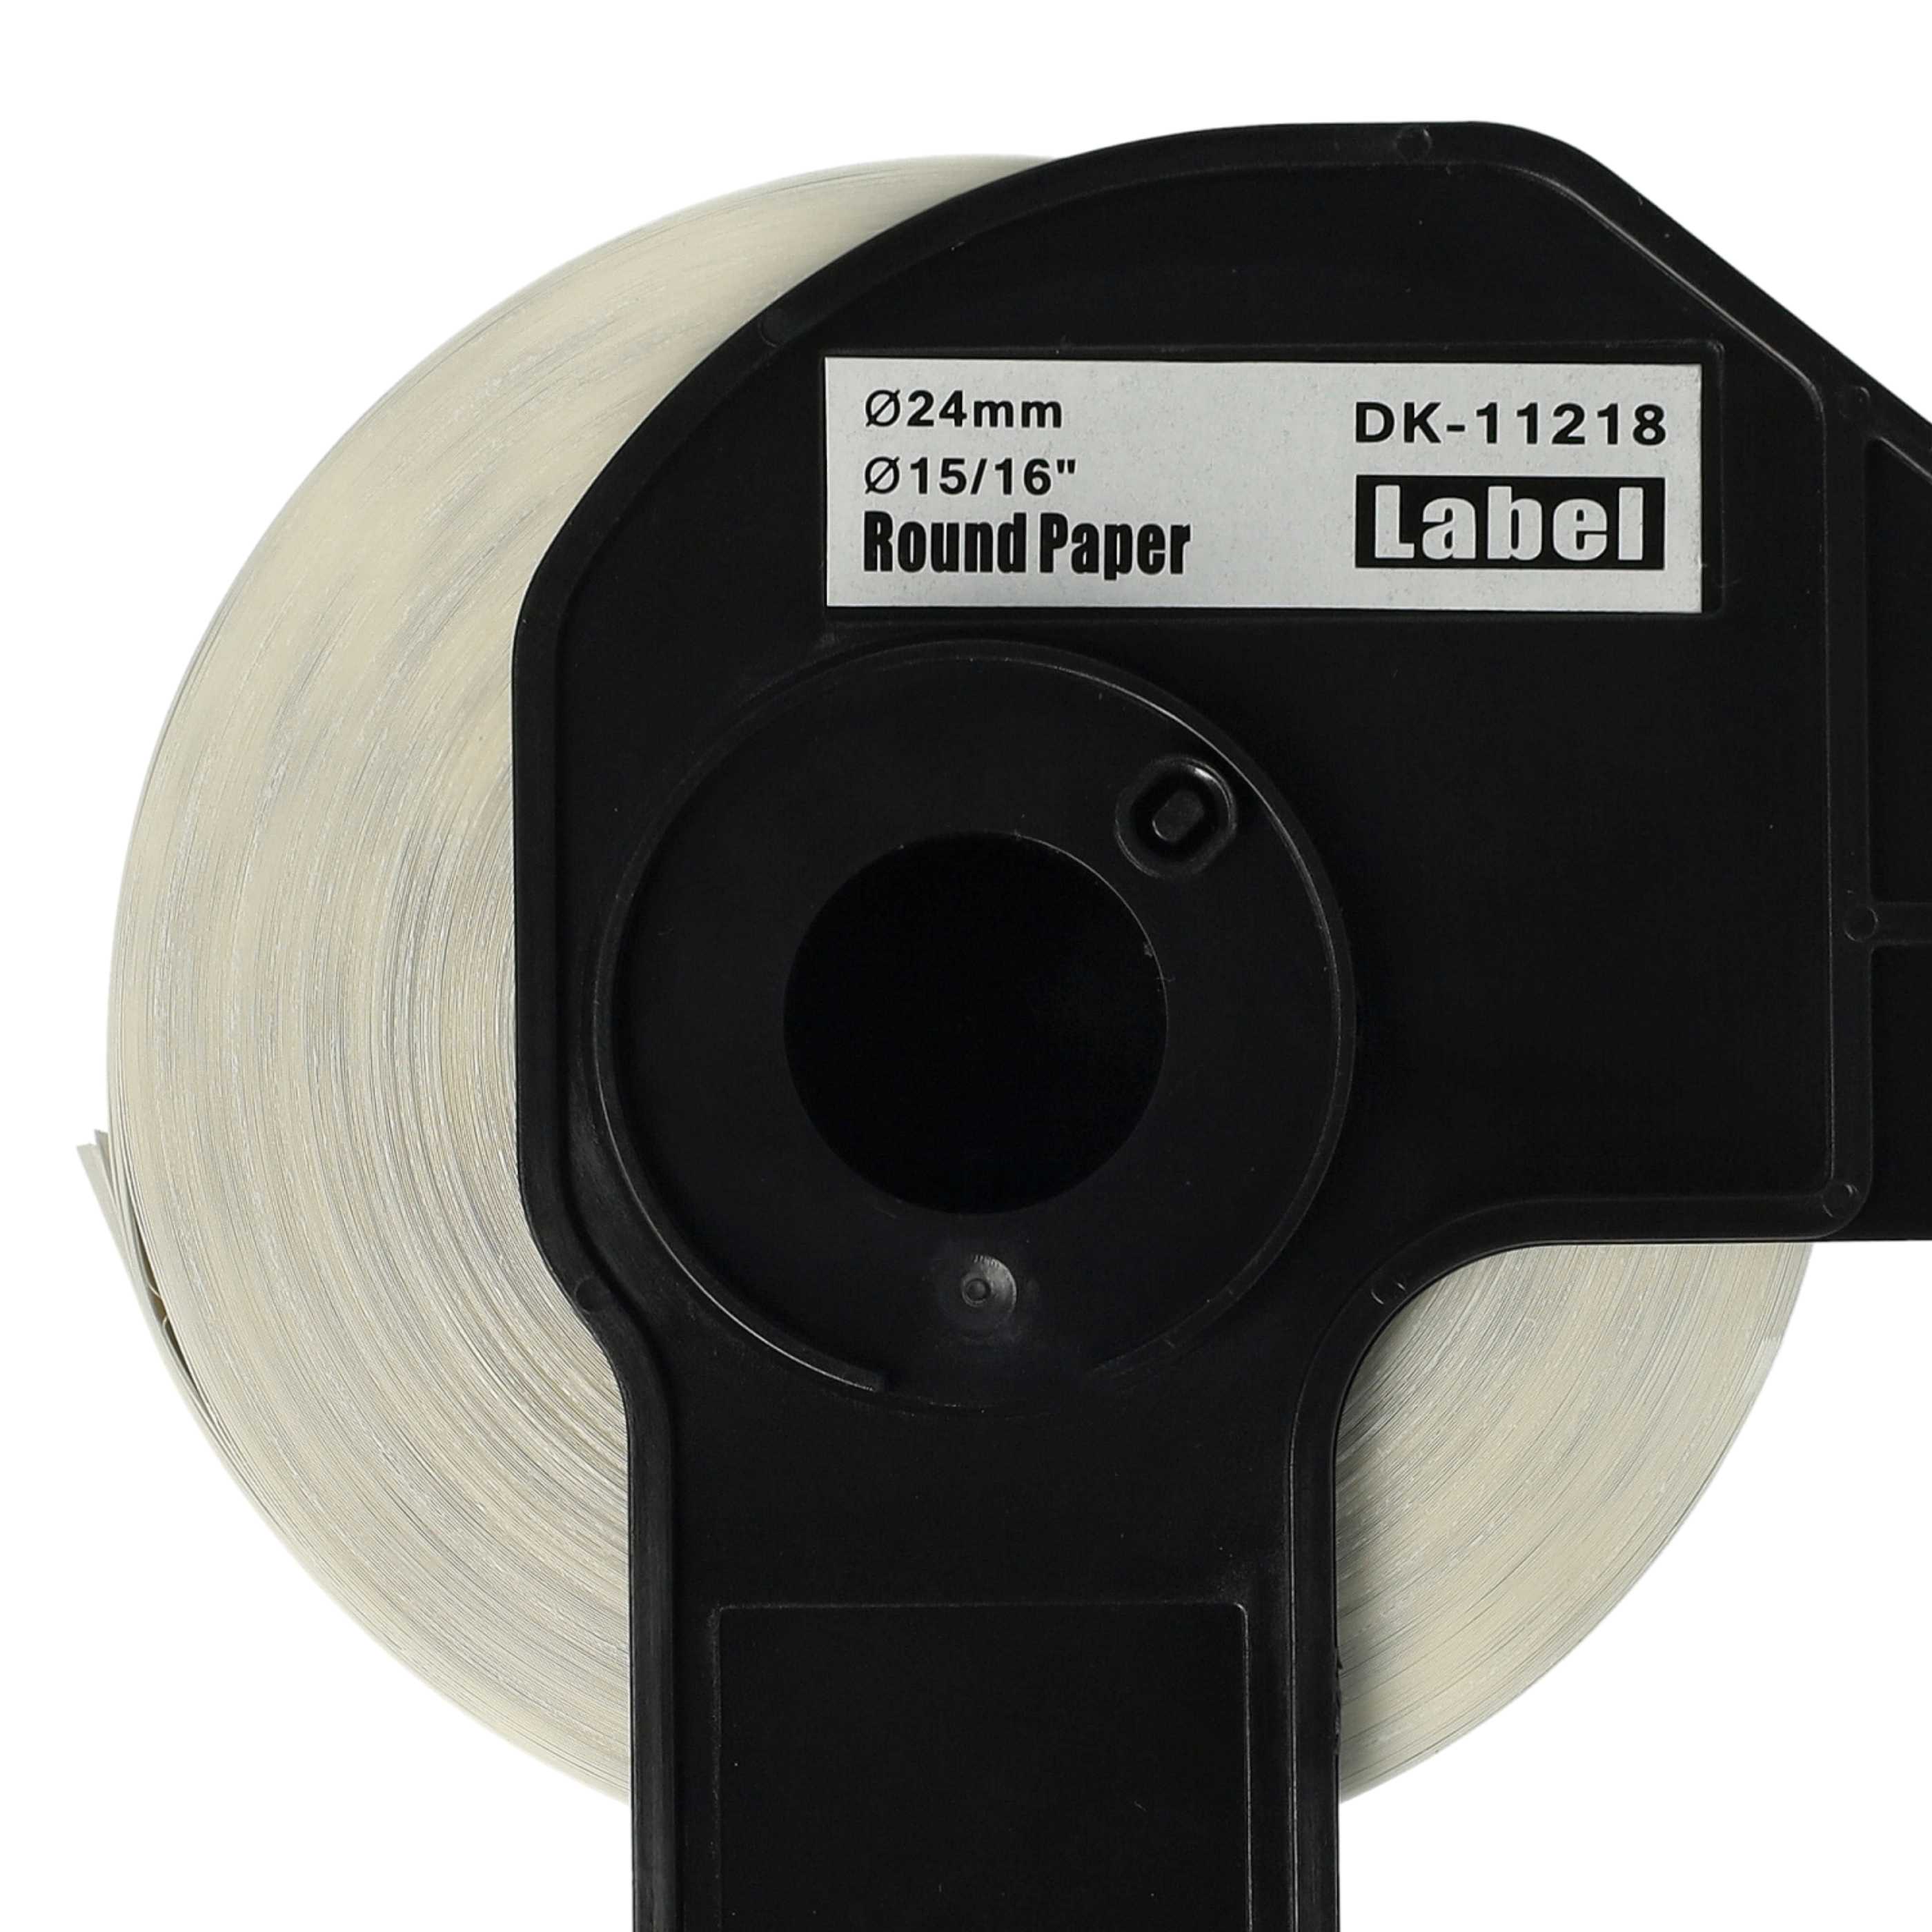 3x Etiketten als Ersatz für Brother DK-11218 Etikettendrucker - Premium 24mm + Halter